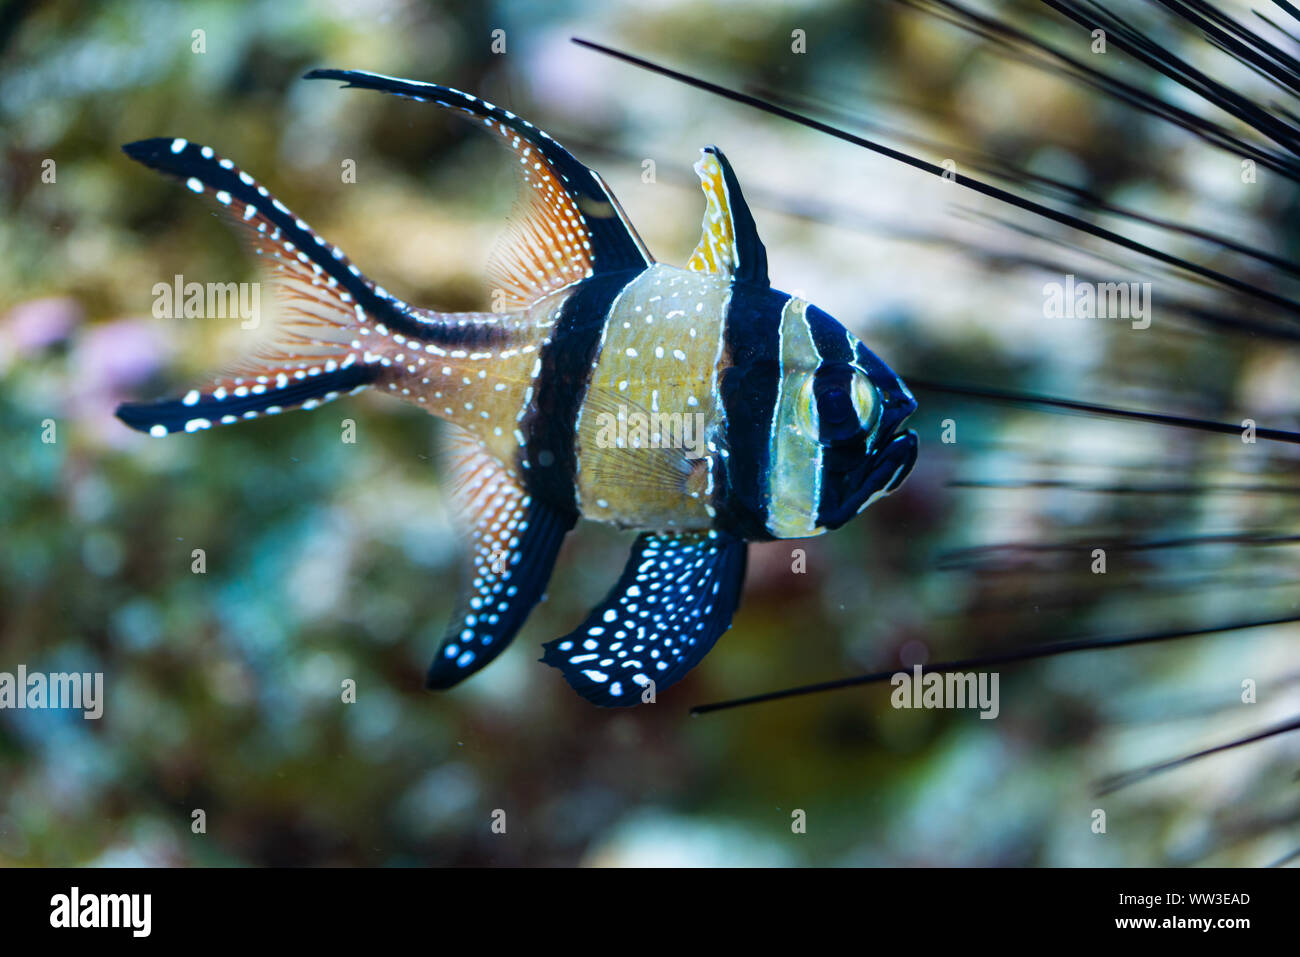 pterapogon kauderni - Banggai cardinalfish - saltwater fish Stock Photo